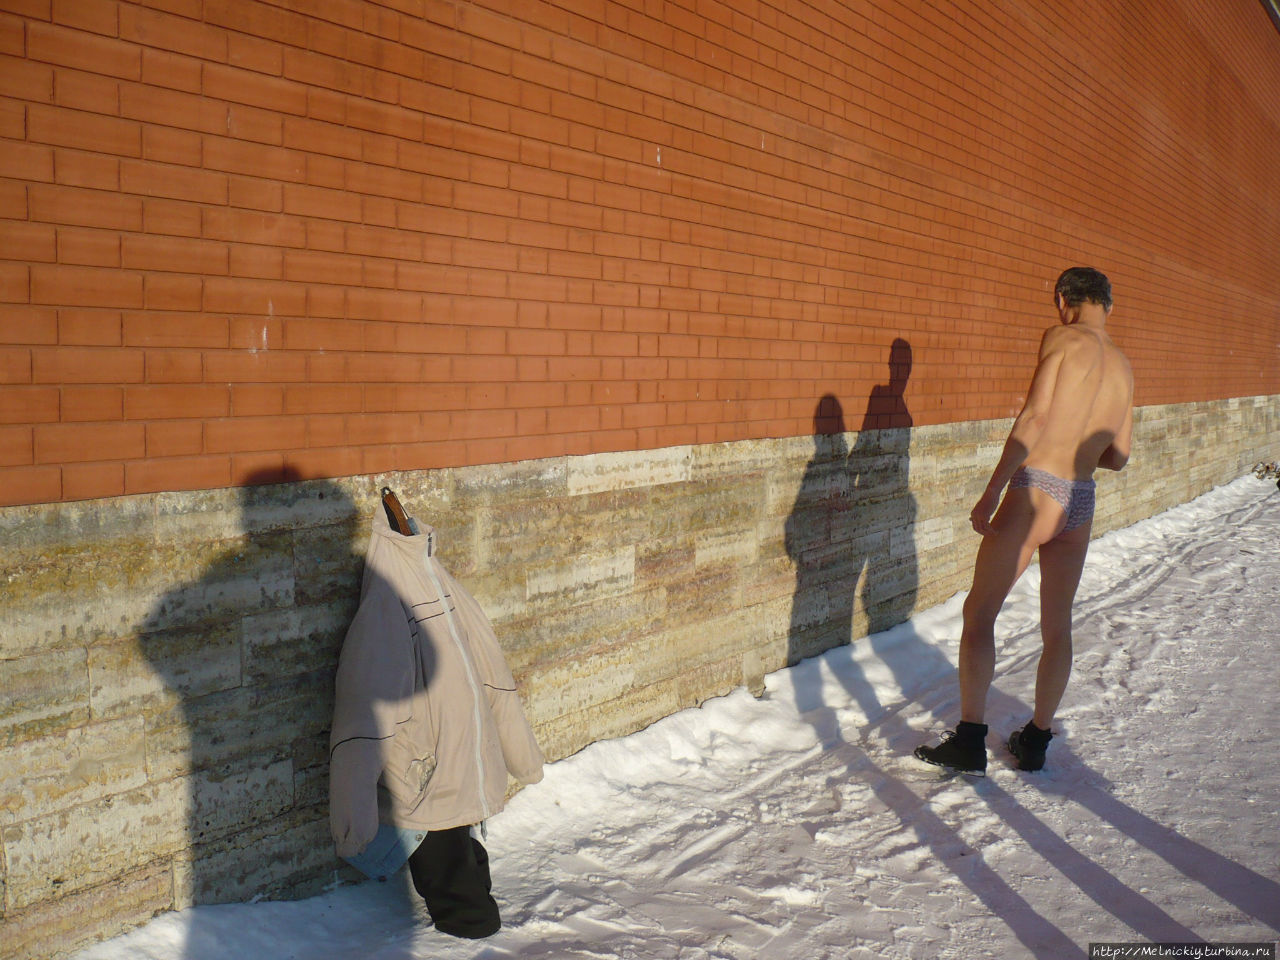 Выставка ледяных скульптур Санкт-Петербург, Россия